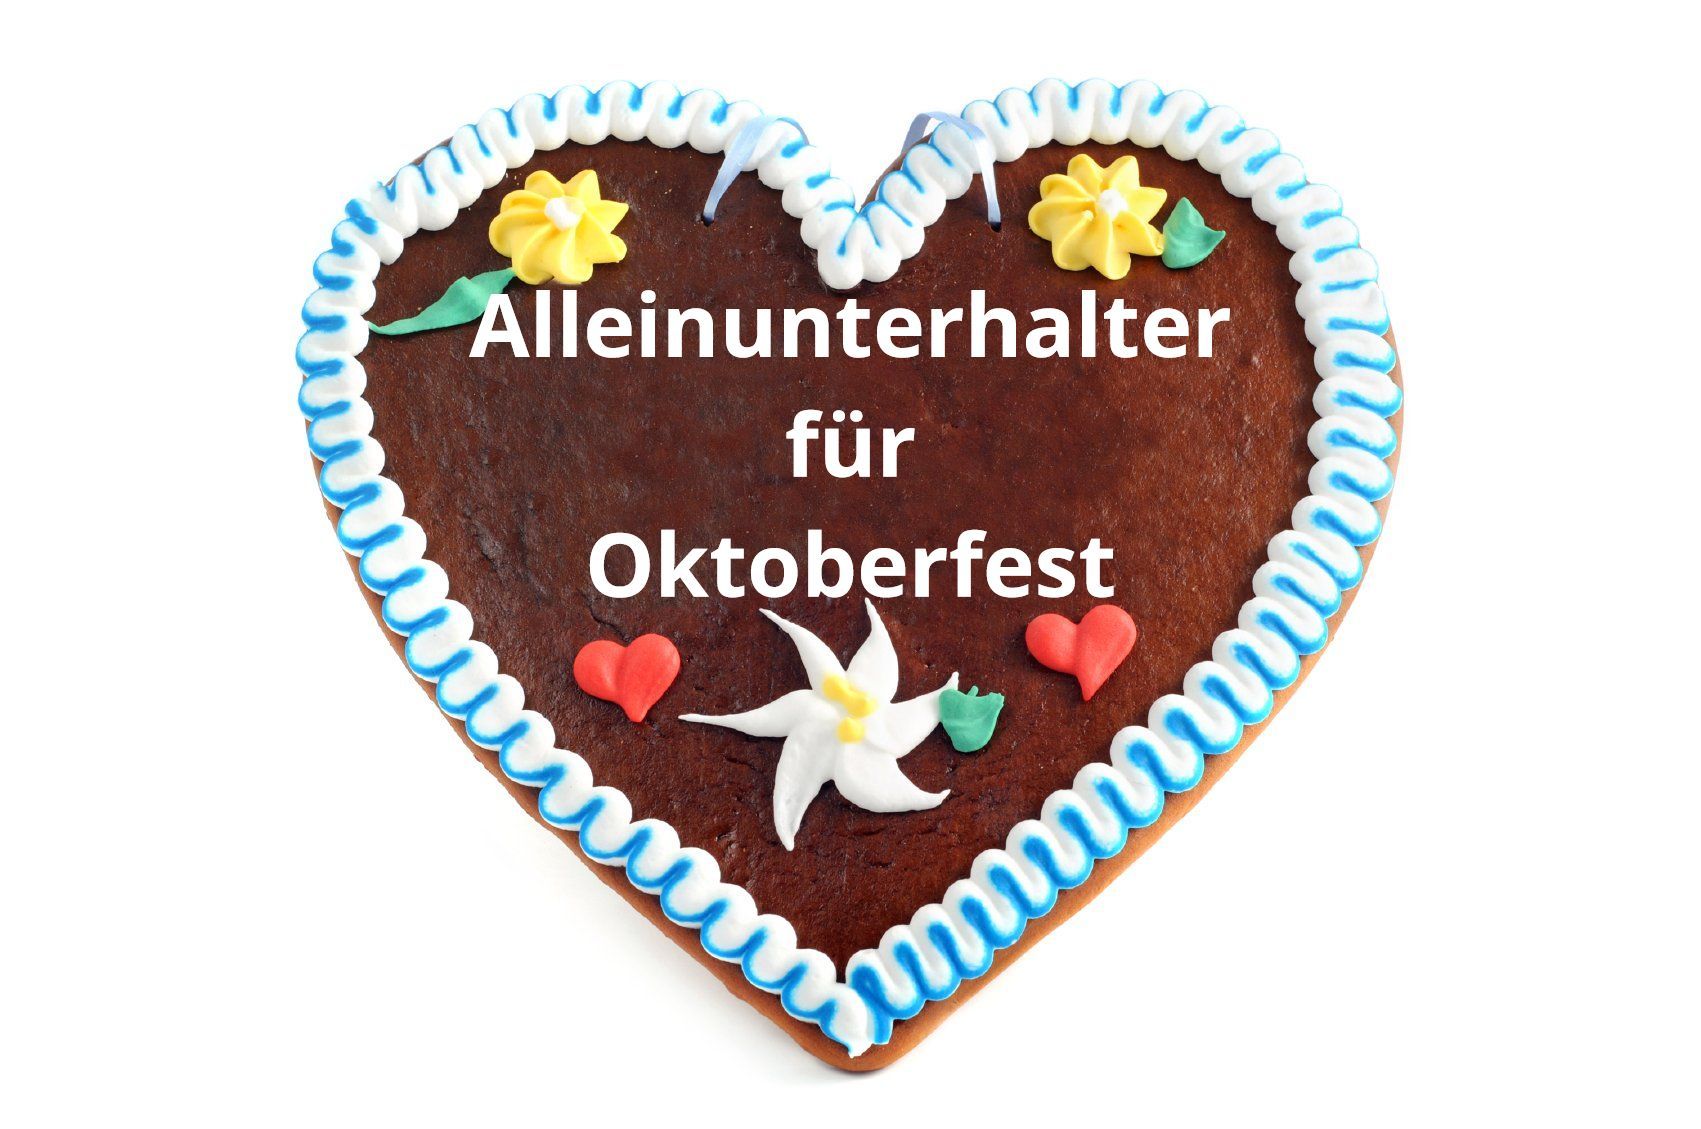 Alleinunterhalter Oktoberfest Mönchengladbach - Keyboarder Karl sorgte für Super Stmmung